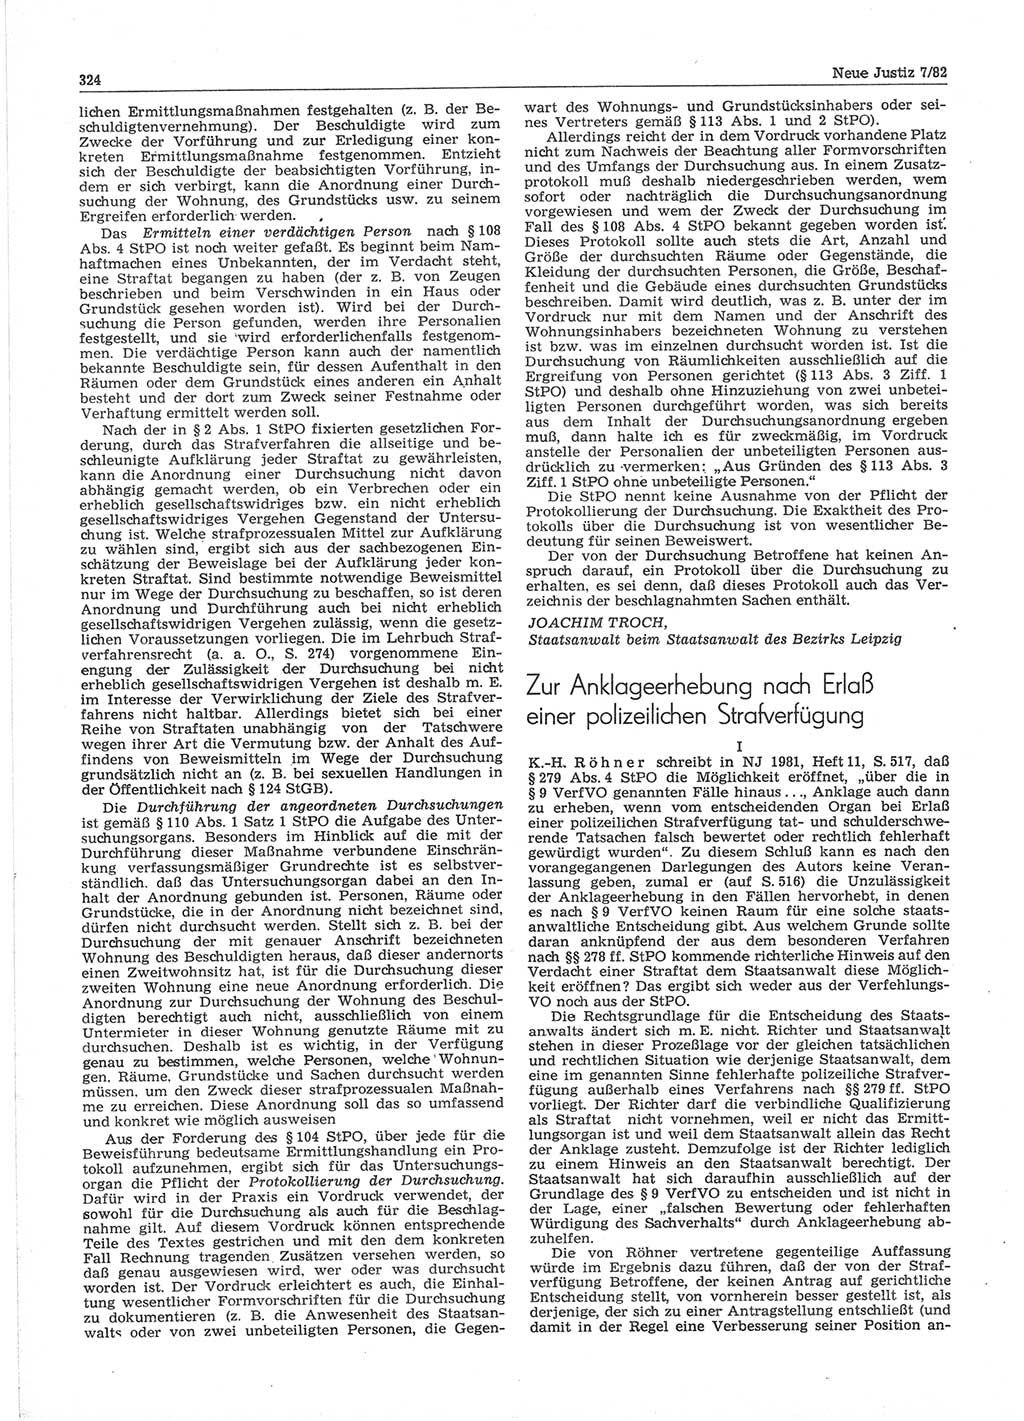 Neue Justiz (NJ), Zeitschrift für sozialistisches Recht und Gesetzlichkeit [Deutsche Demokratische Republik (DDR)], 36. Jahrgang 1982, Seite 324 (NJ DDR 1982, S. 324)